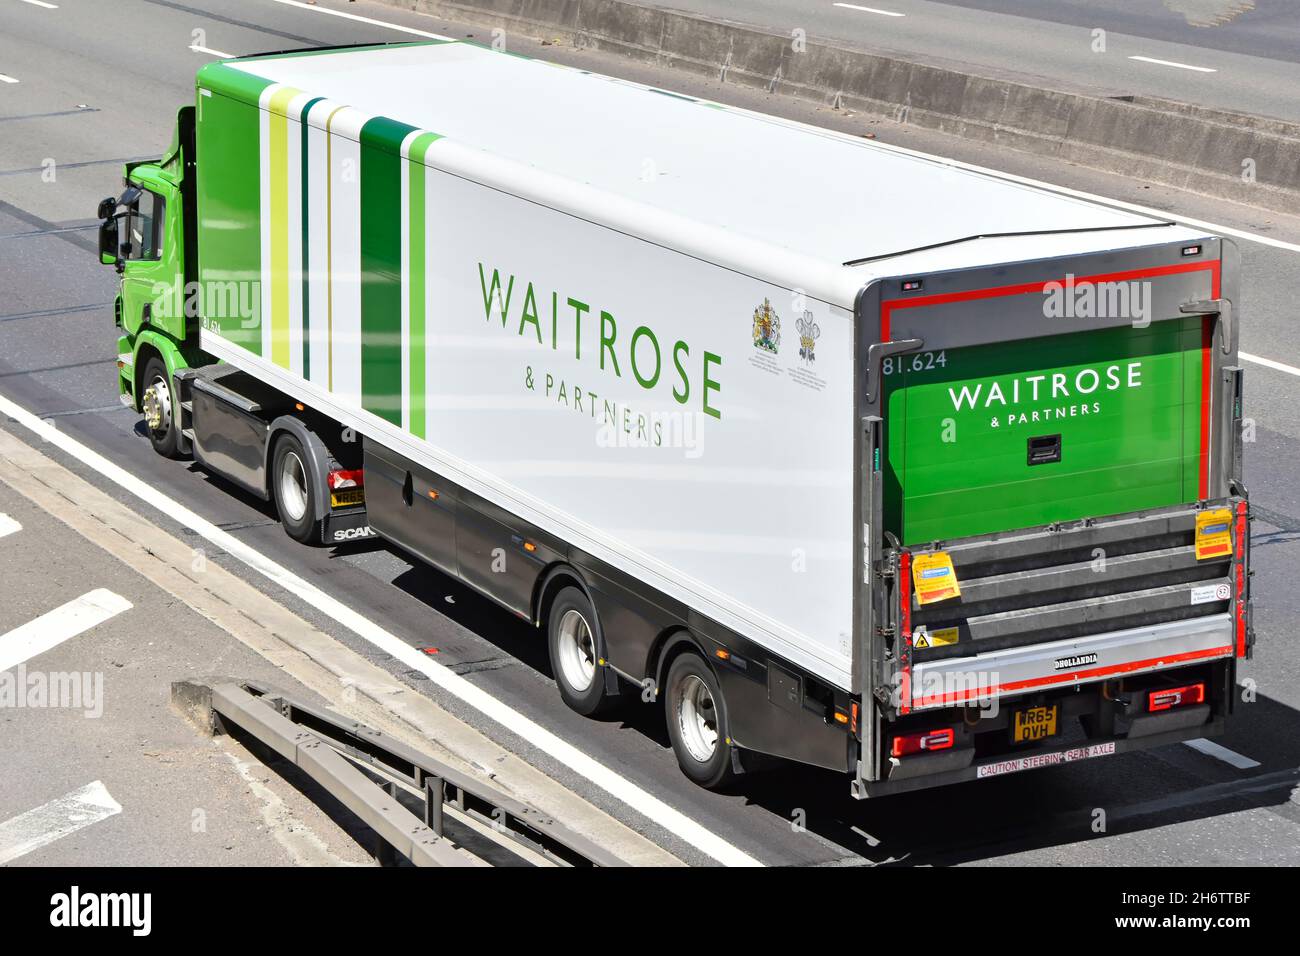 Vista aerea laterale e posteriore di Waitrose commercio online supermercato alimentare catena di approvvigionamento negozio consegna camion e rimorchio guida su autostrada UK Foto Stock